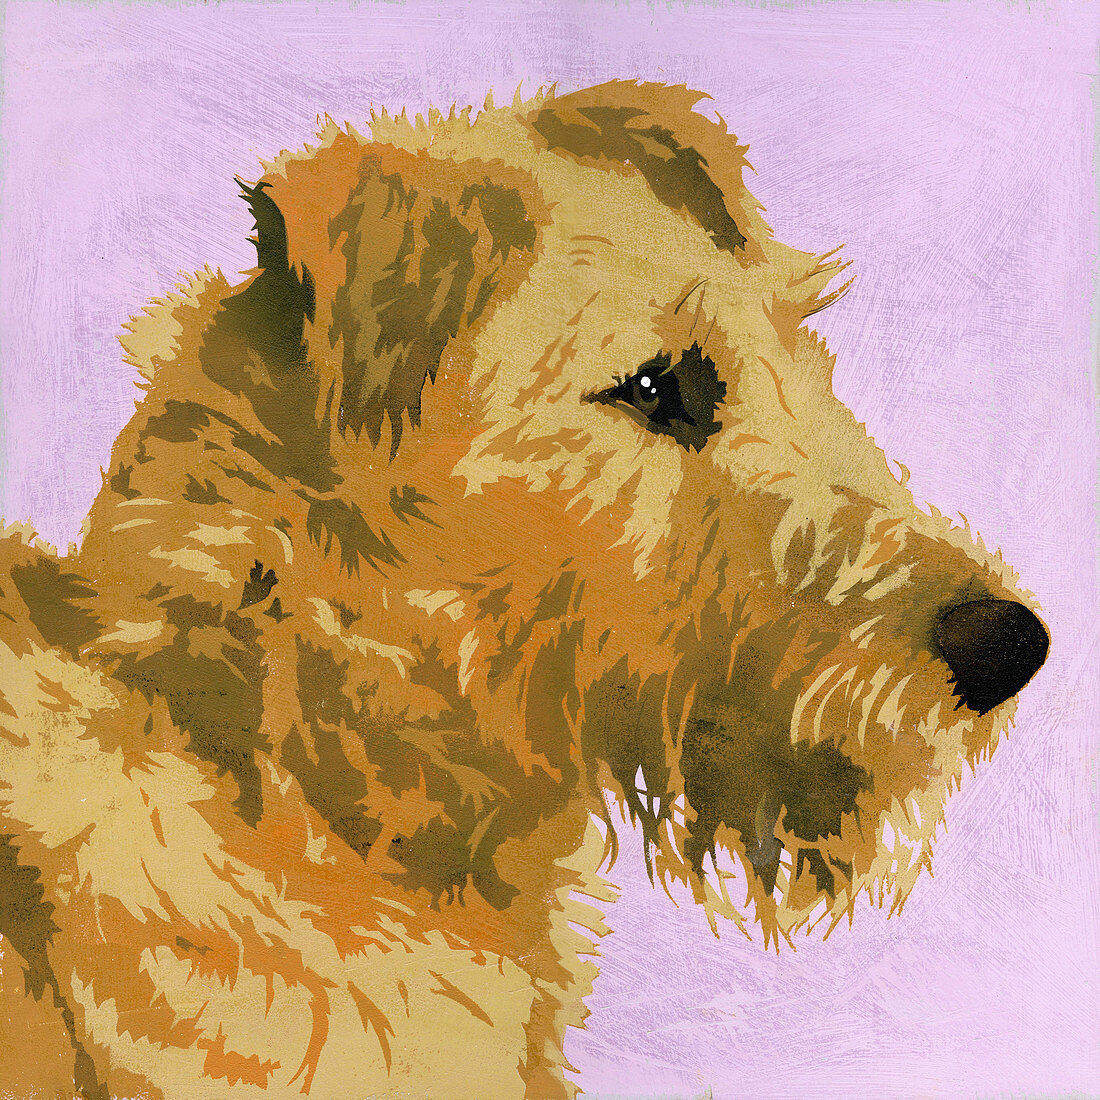 Irish Terrier dog, illustration